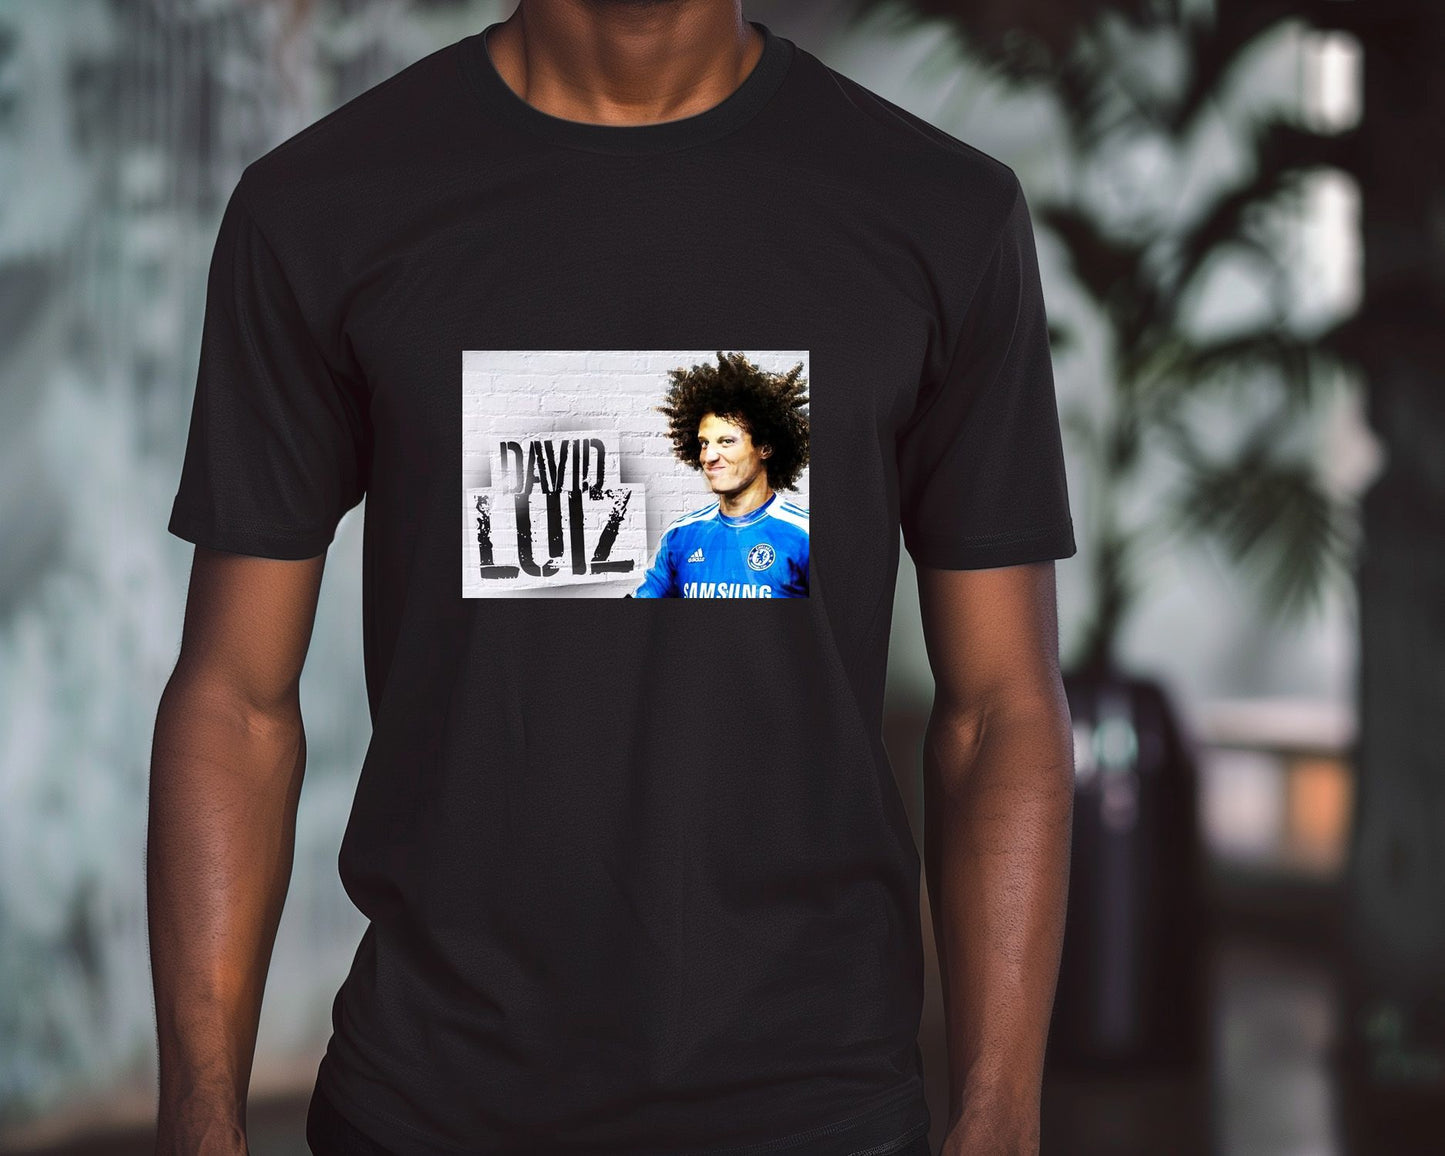 David Luiz 1 - @SportDesign